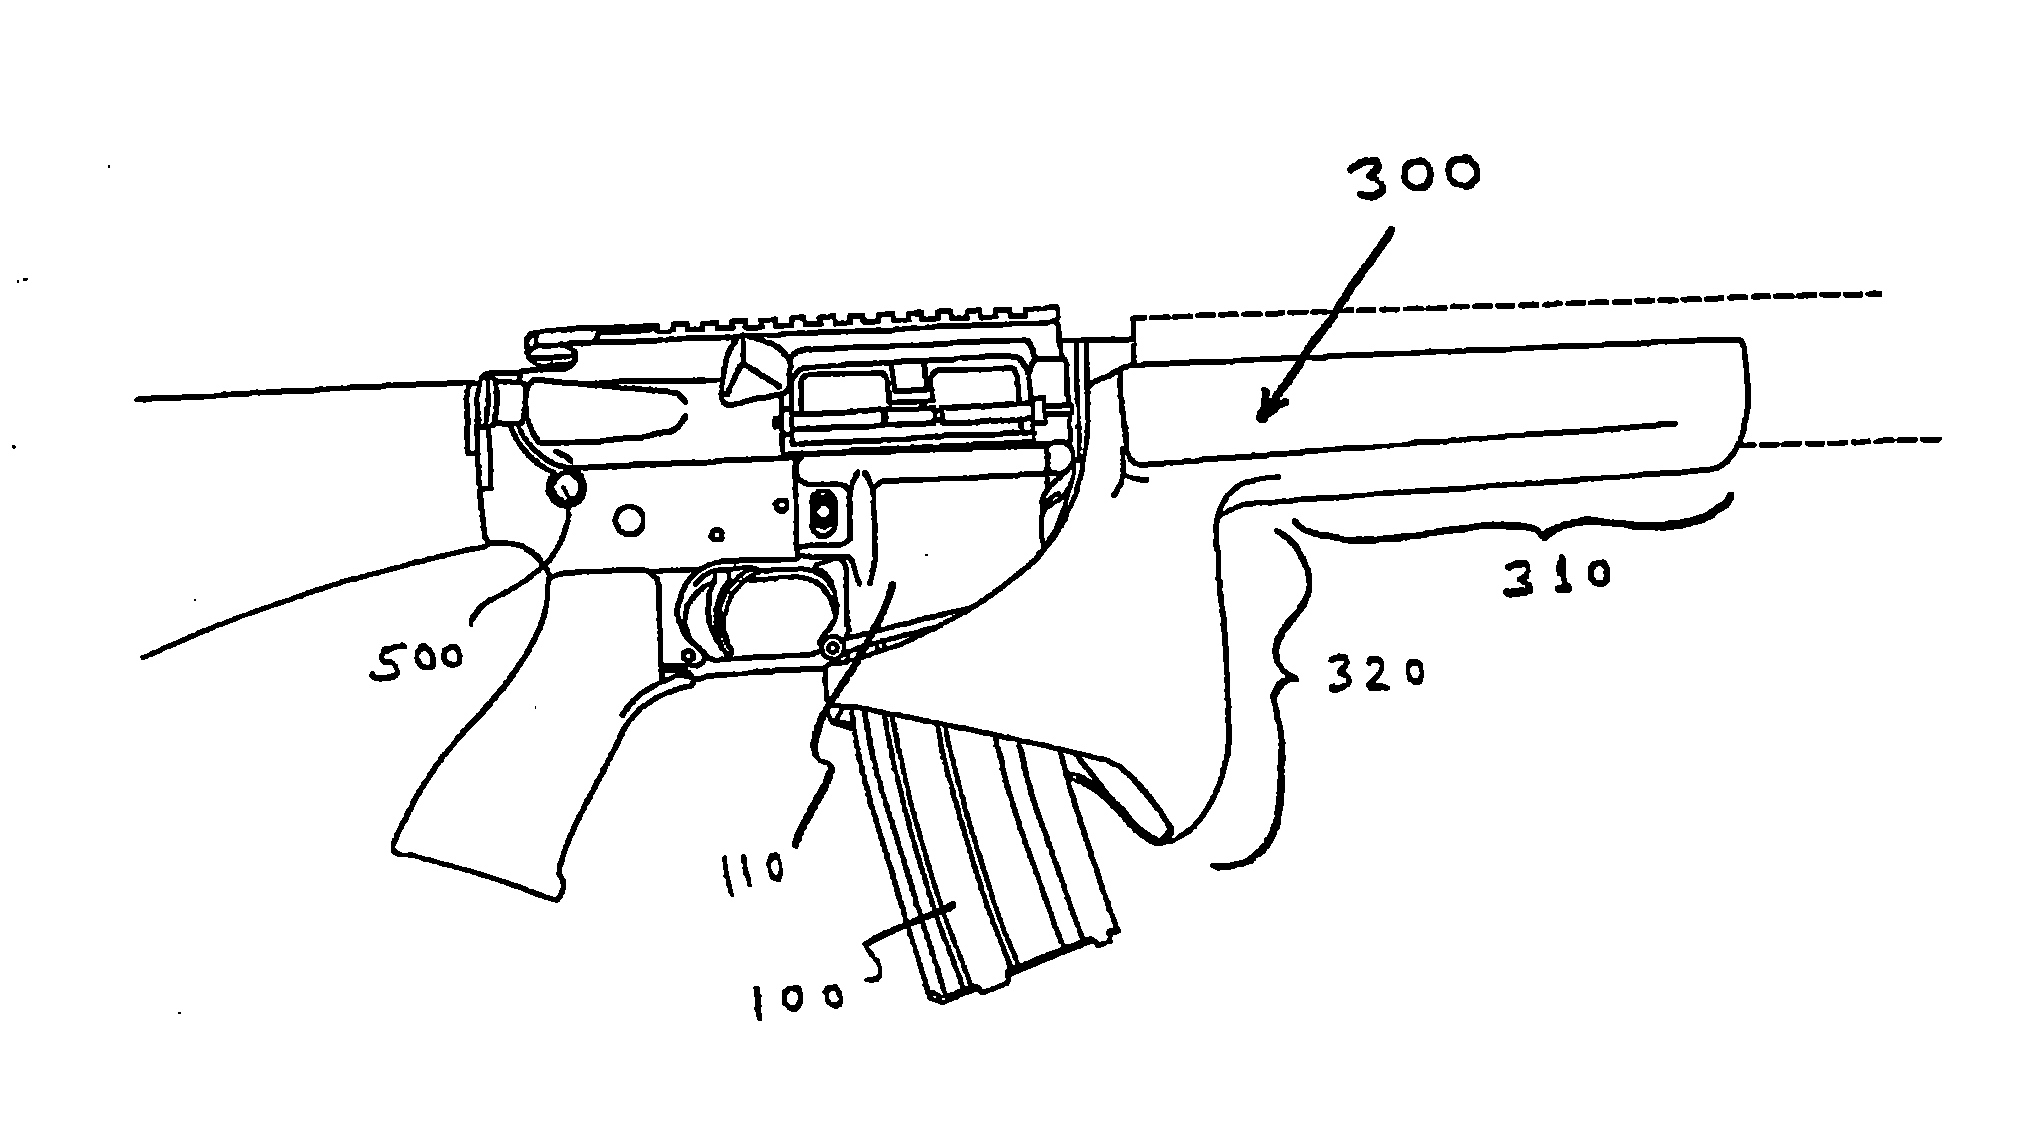 Firearm grip